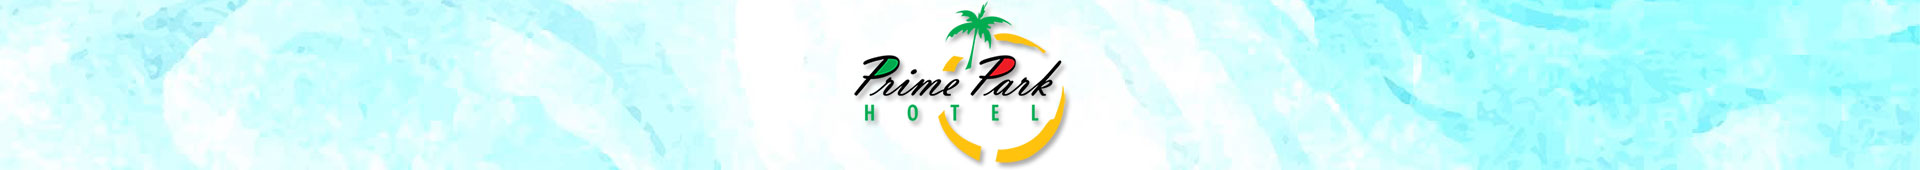 Prime Park Hotel